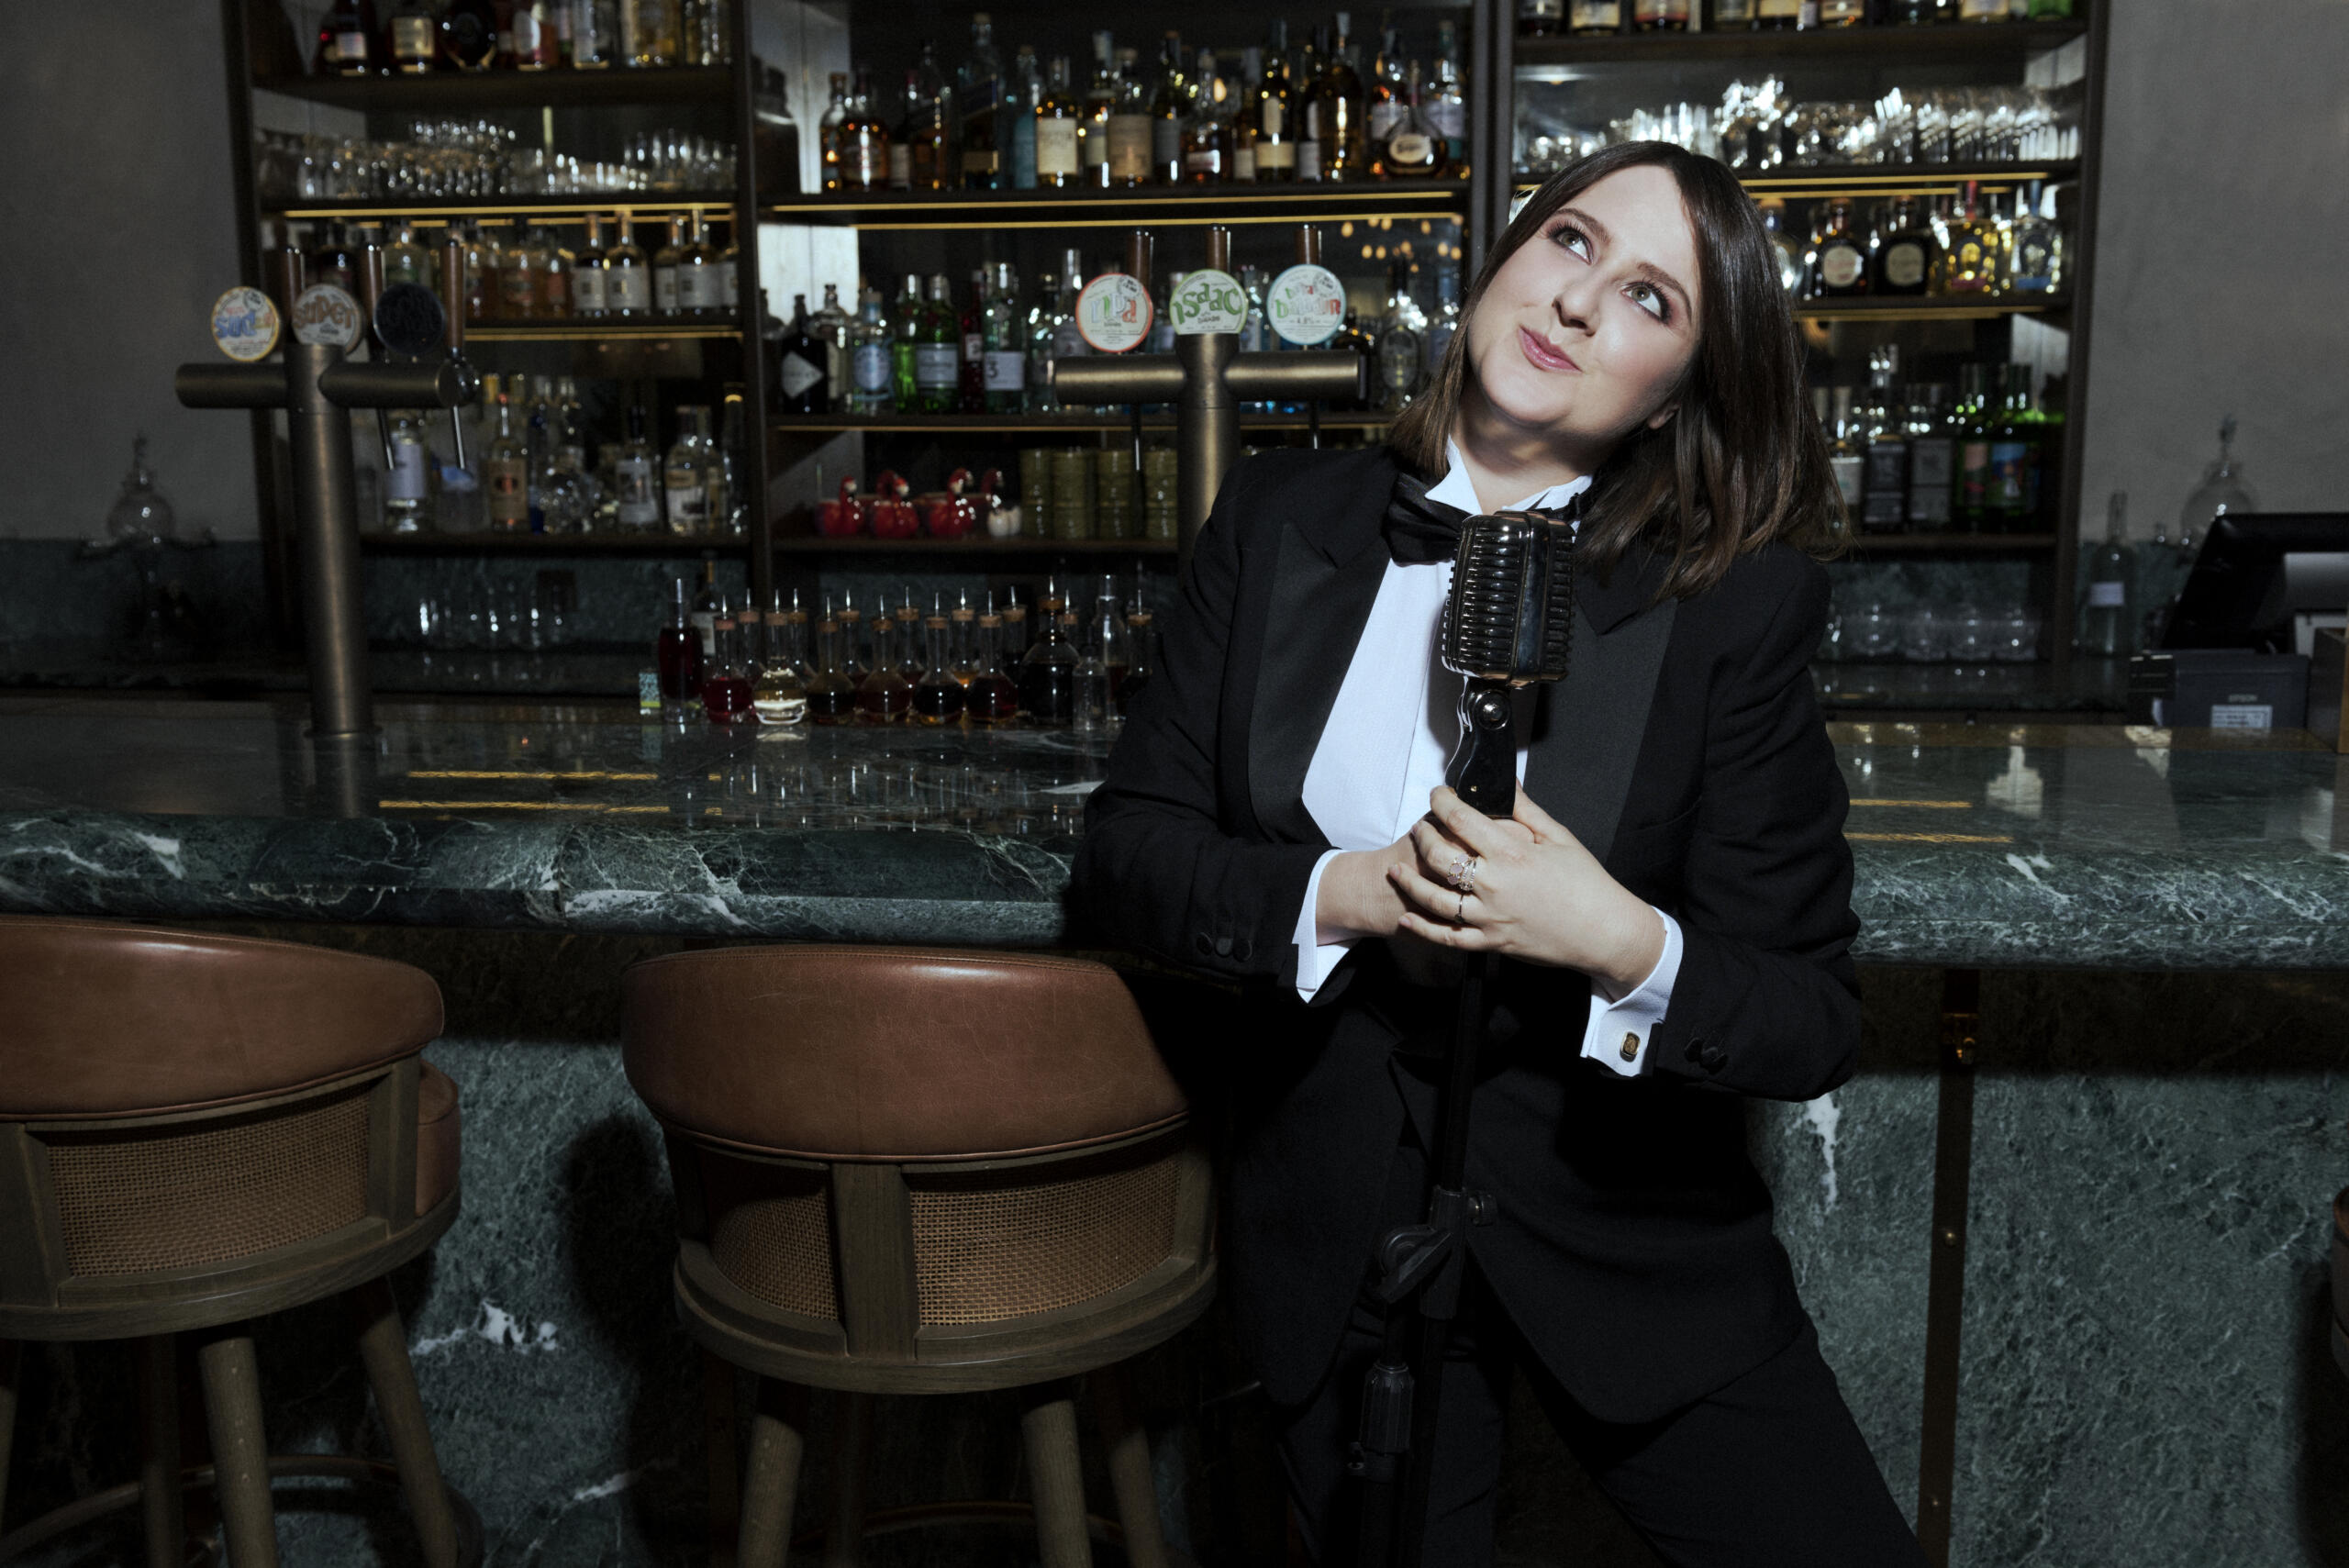 Ein Porträt der italienischen Stand-up-Comedian Michela Giraud. Sie lehnt in einem schwarzen Anzug an einer Bar.